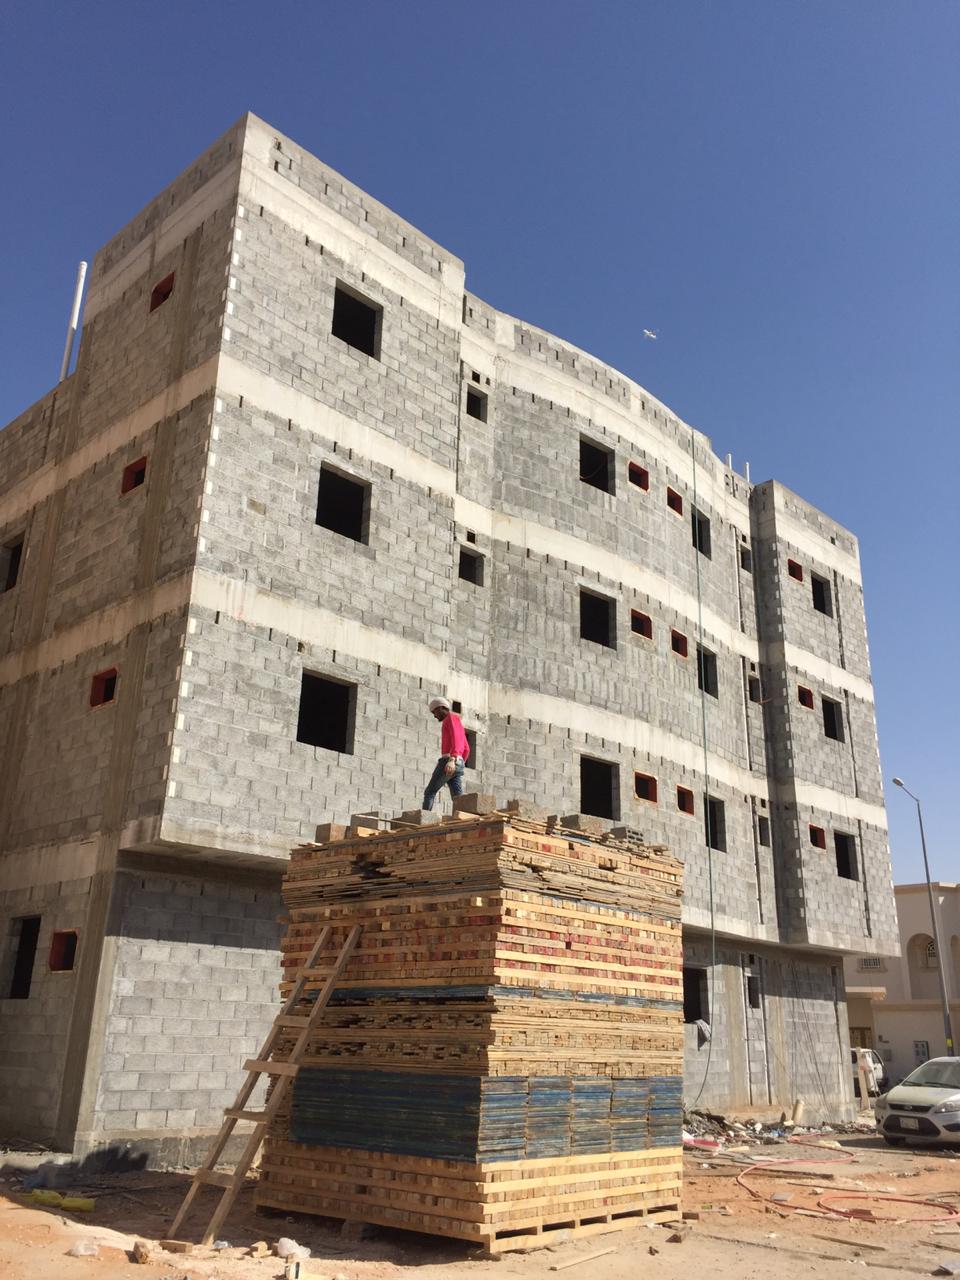 مقاول بناء في الرياض 0533266762 مقاول  عظم ممتاز بالرياض وبسعر مناسب P_1284octxi0